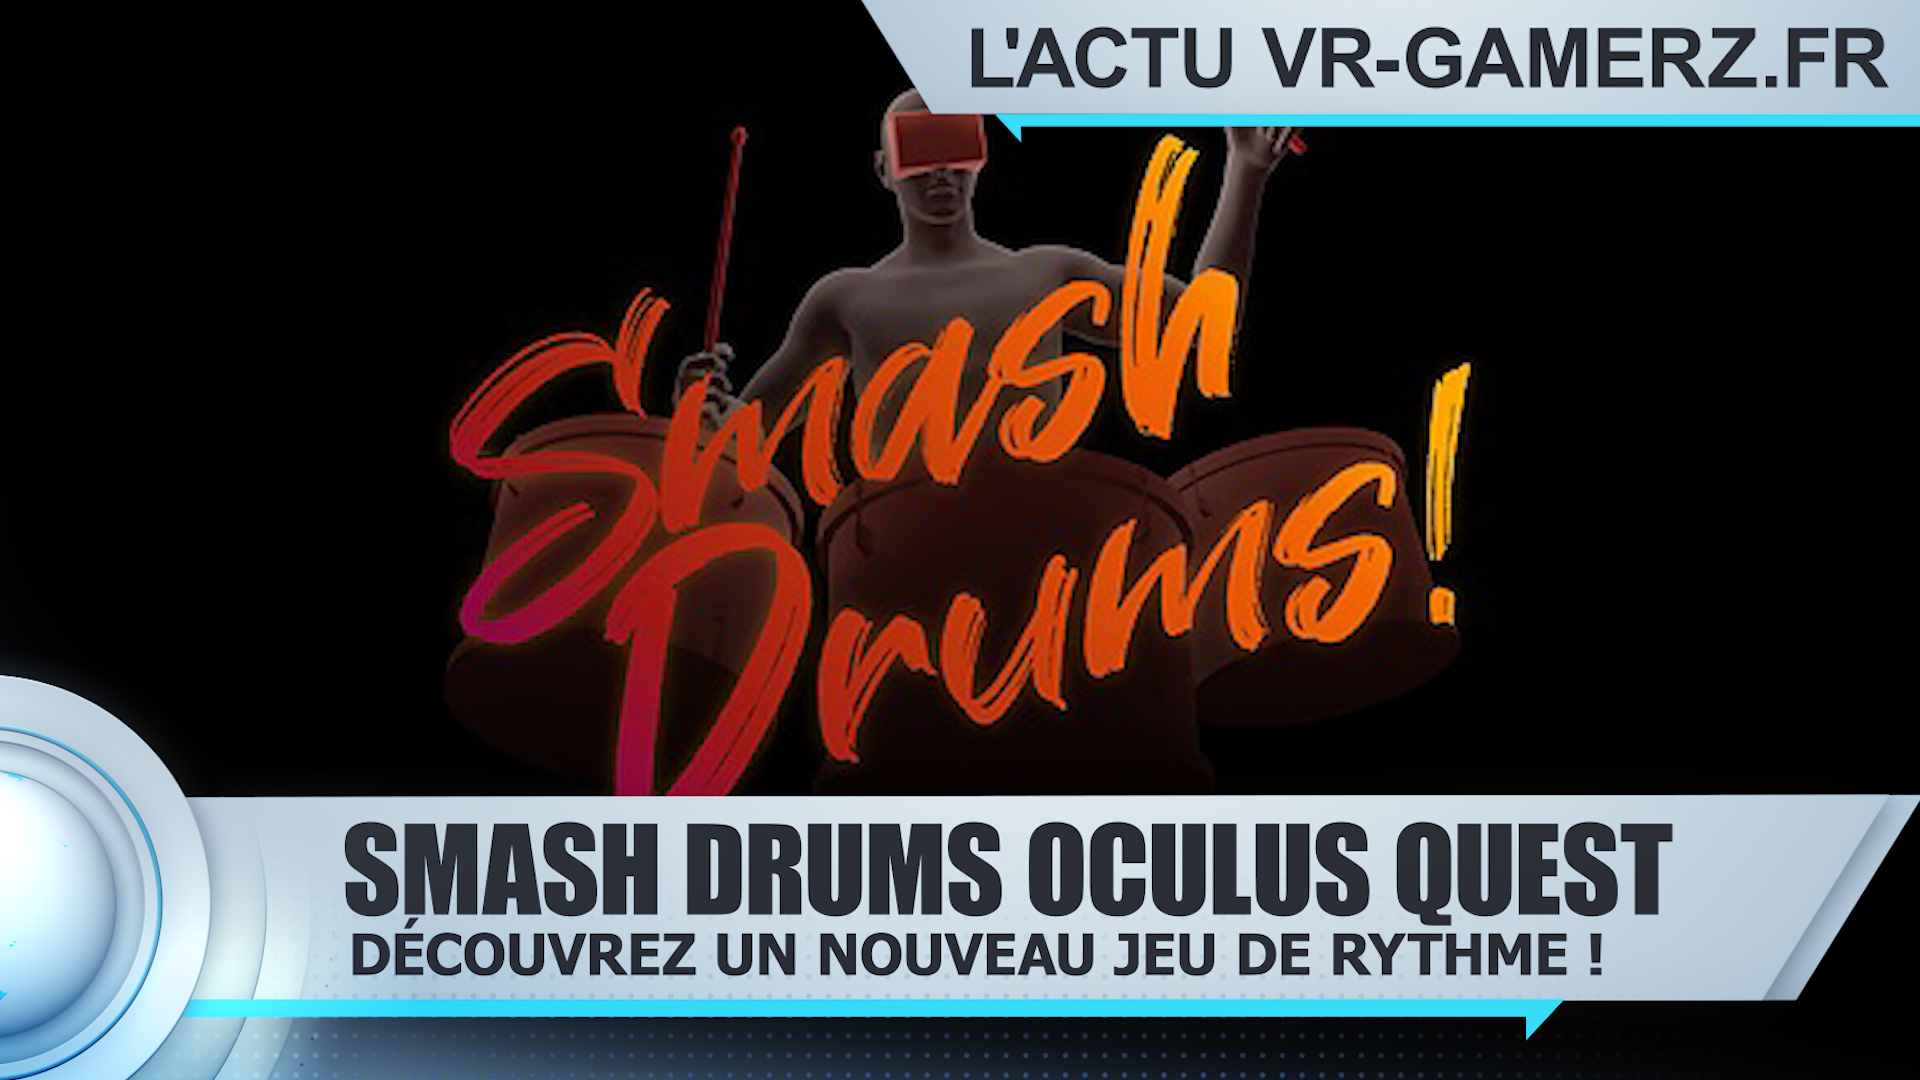 Smash Drums Oculus quest : Découvrez ce nouveau jeu de rythme